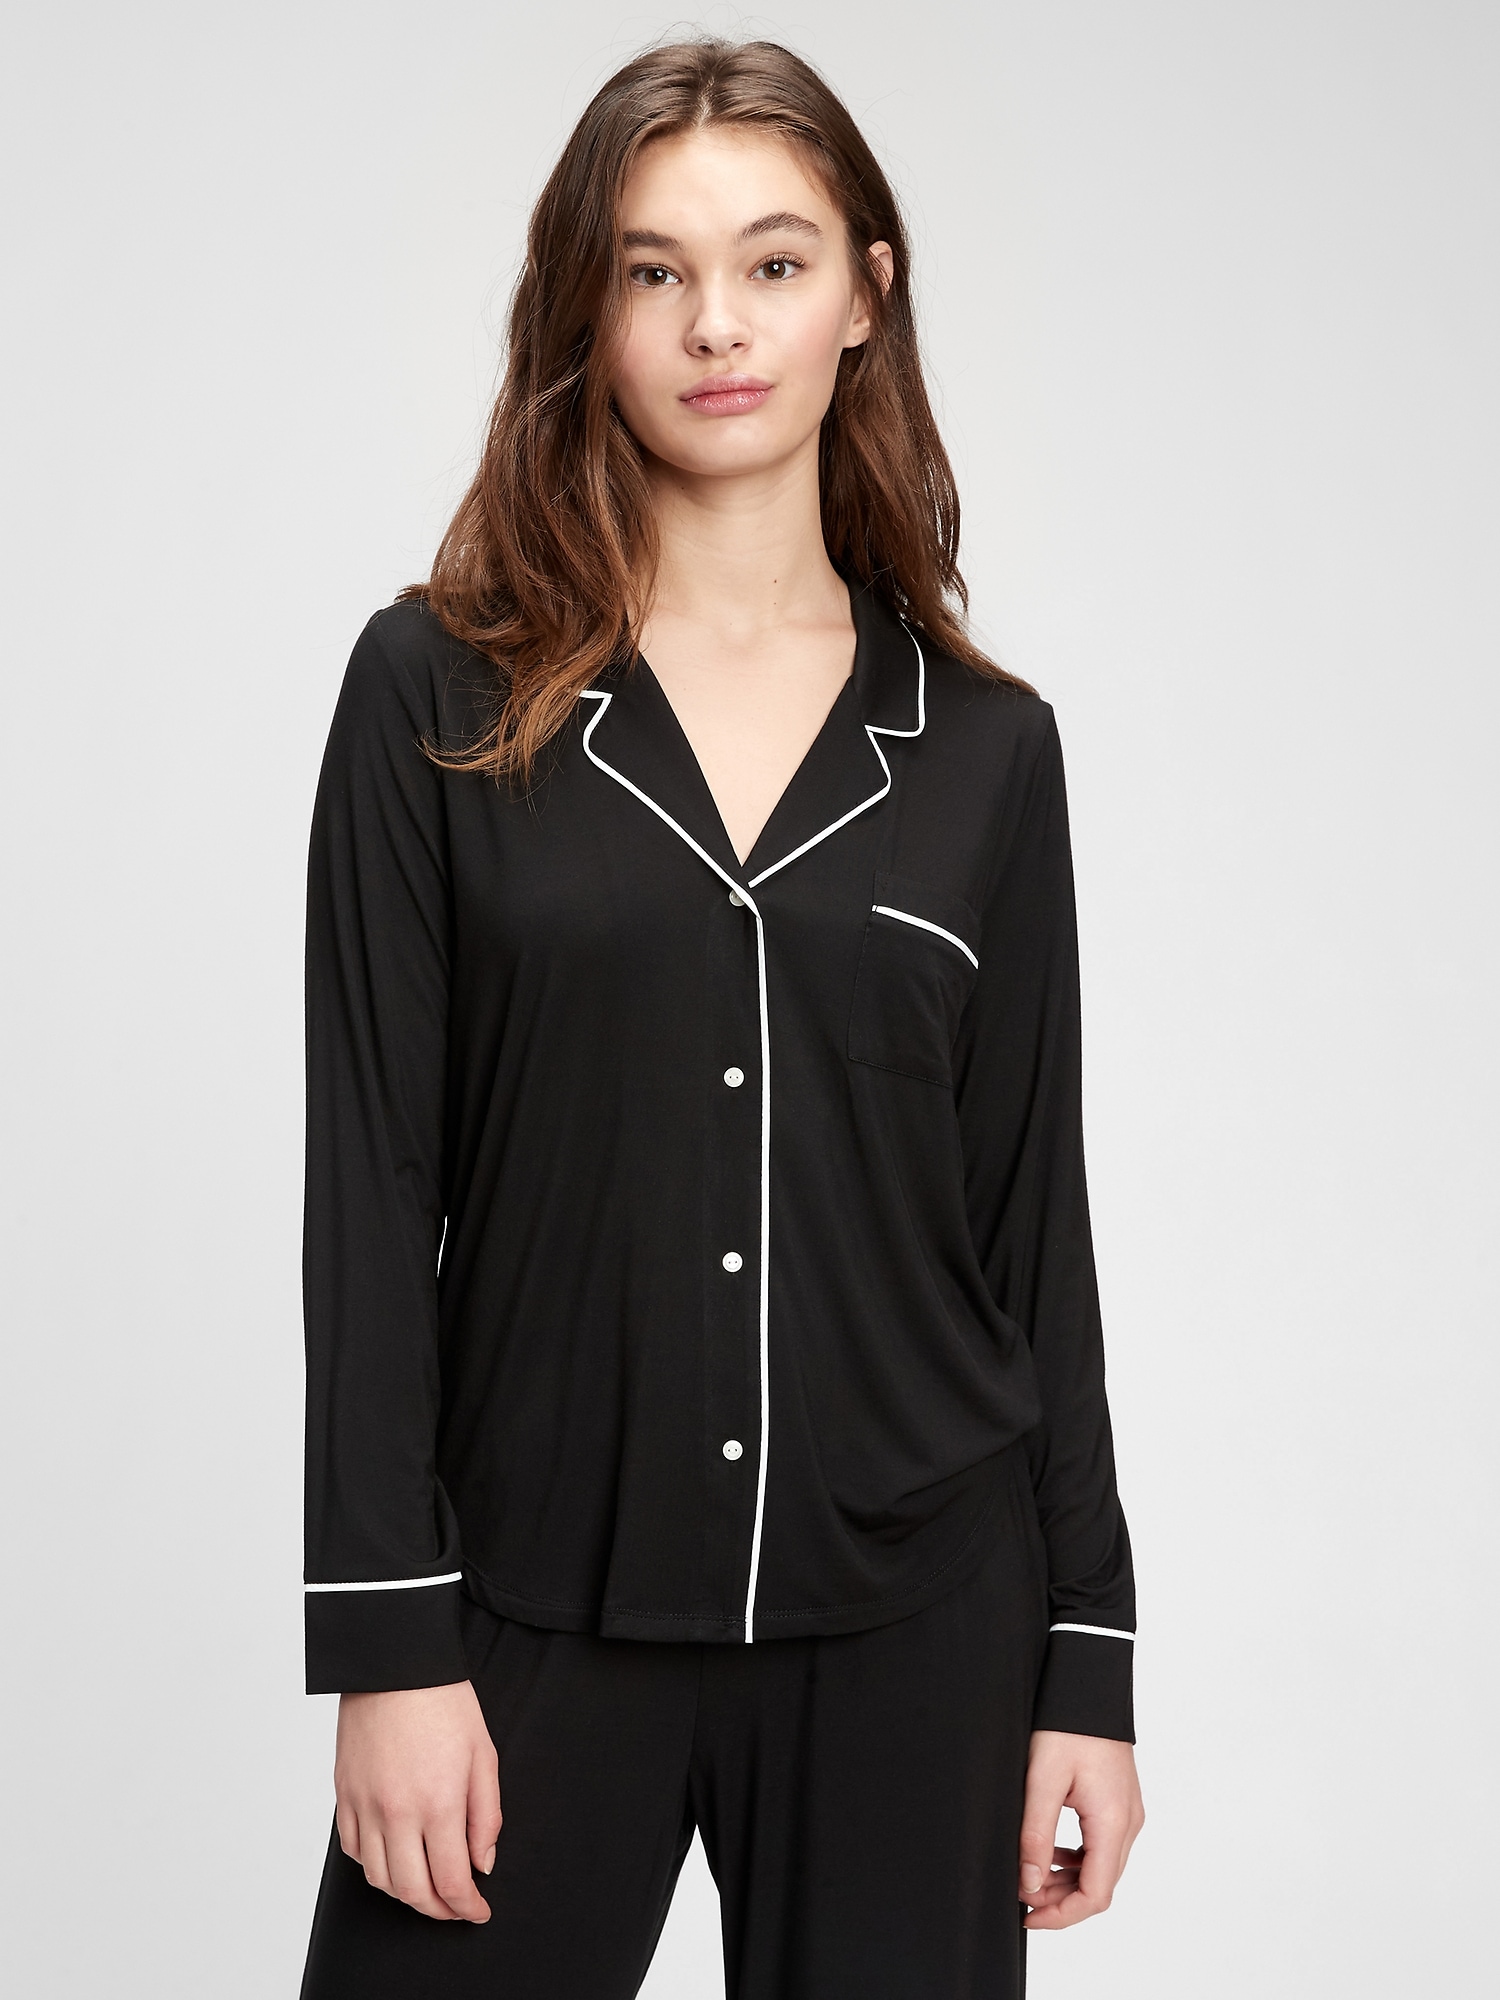 Gap Modal Pajama Shirt black. 1